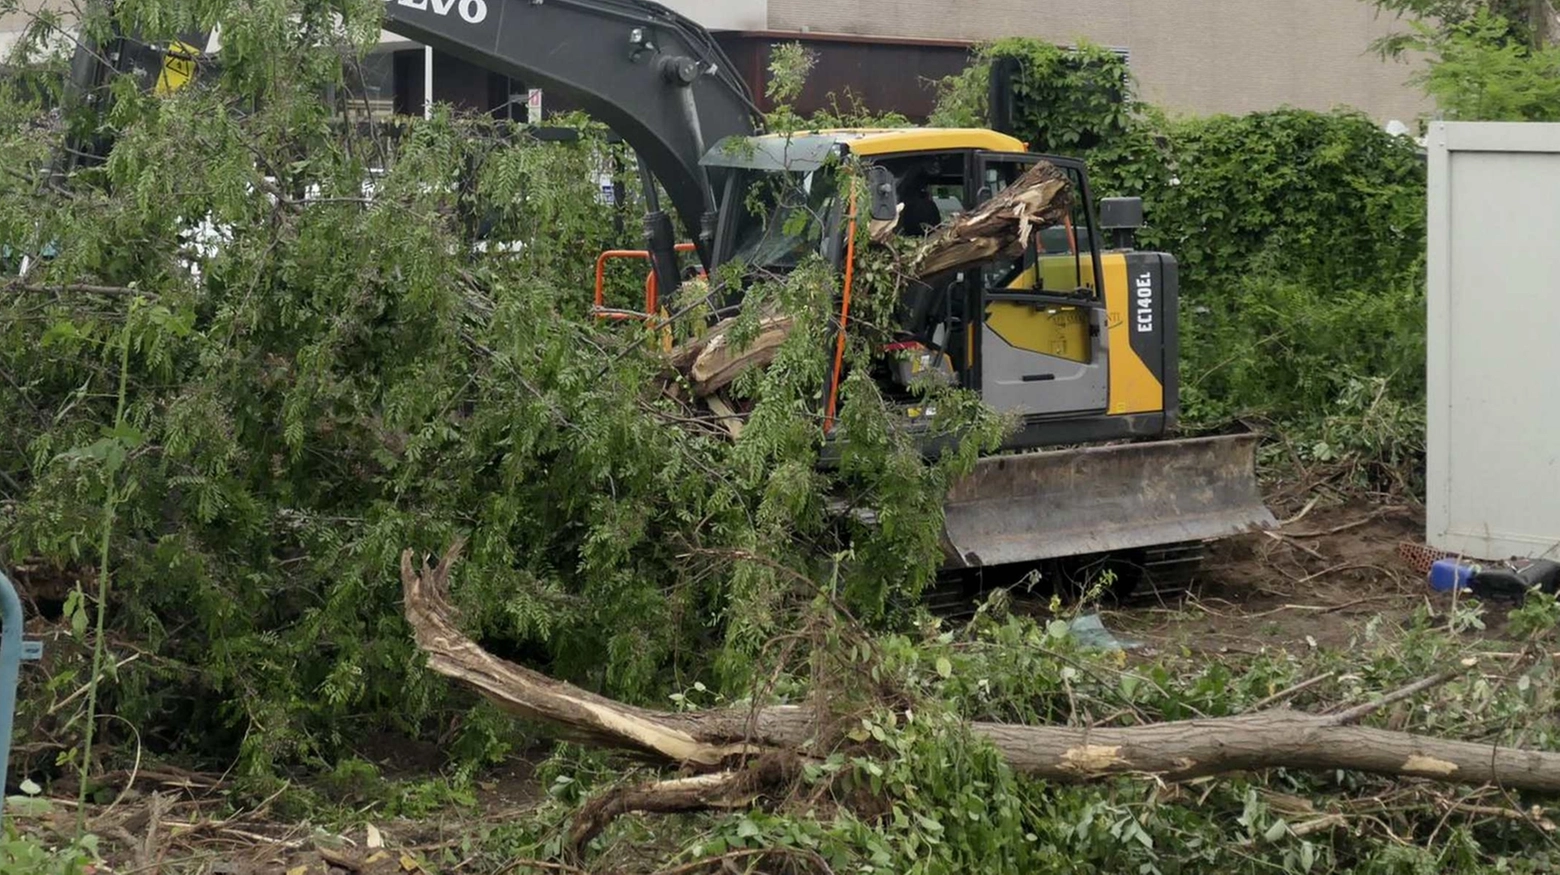 L'albero crollato sull'escavatore (Foto Umicini)